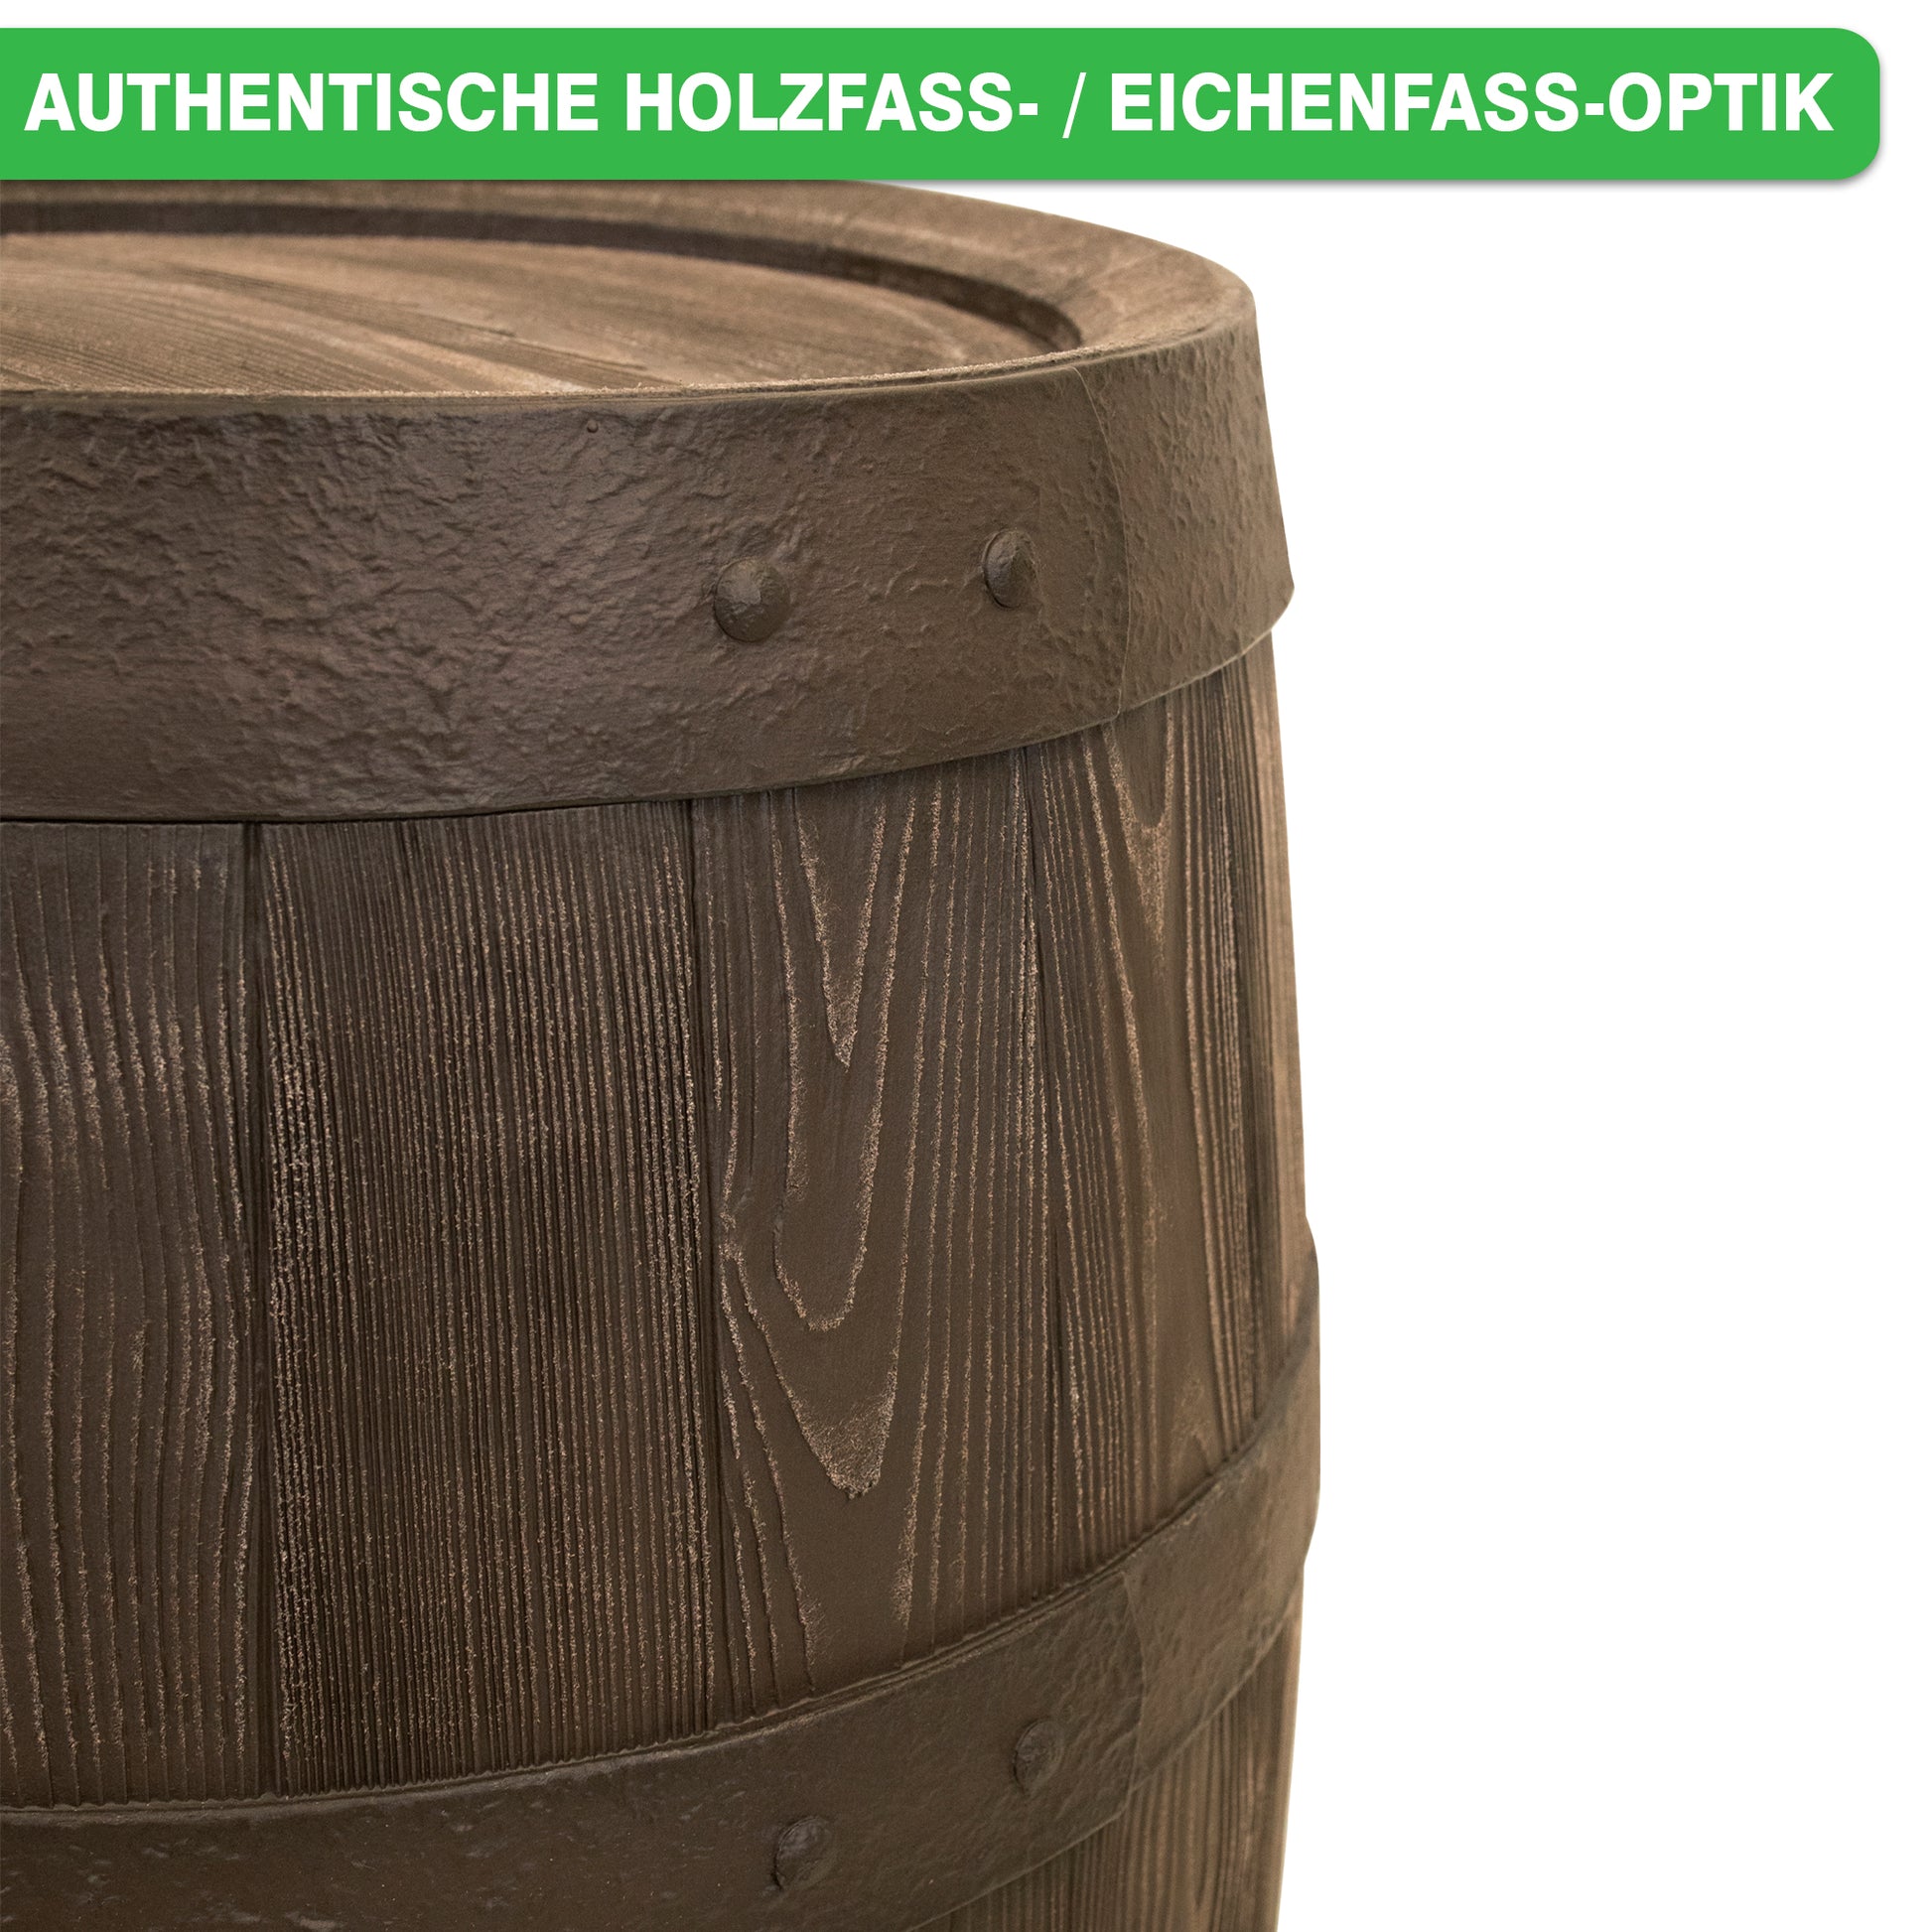 Holzfass mit realistischer Eichenholzstruktur, ausgeführt als YourCasa Regentonne 250 Liter [Holz] - Frostsicher & UV-beständig.